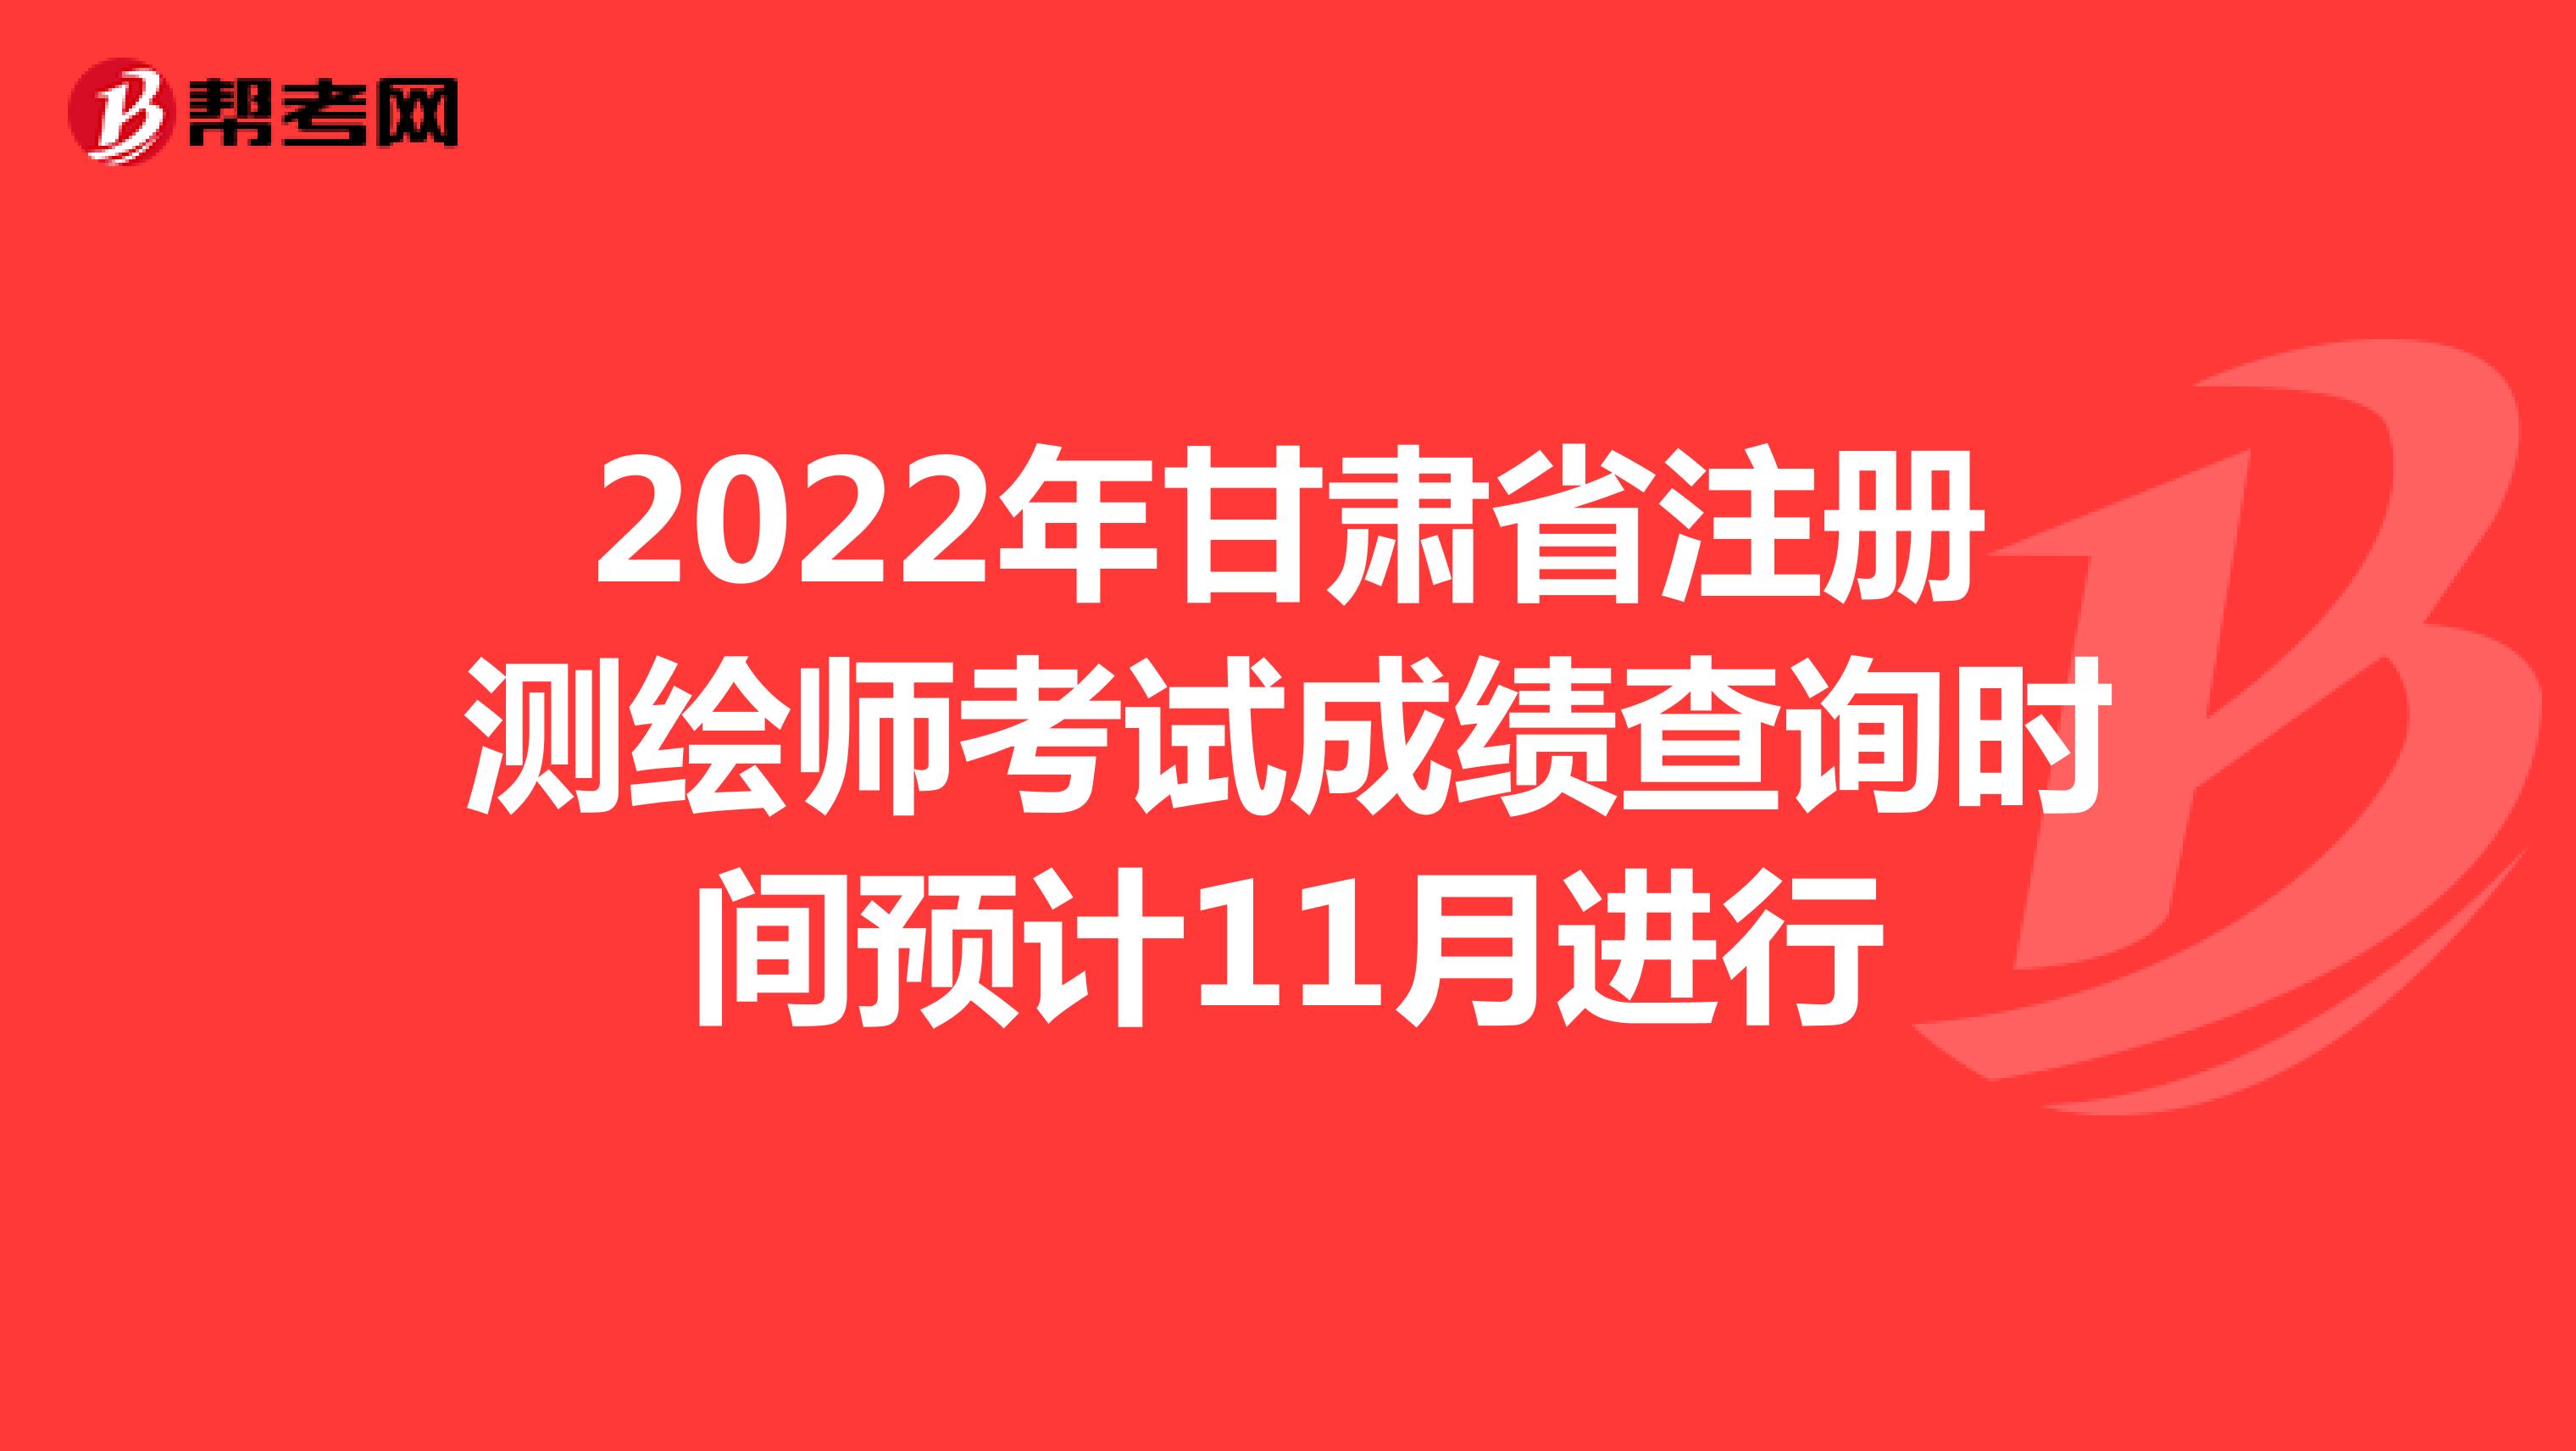 2022年甘肃省注册测绘师考试成绩查询时间预计11月进行